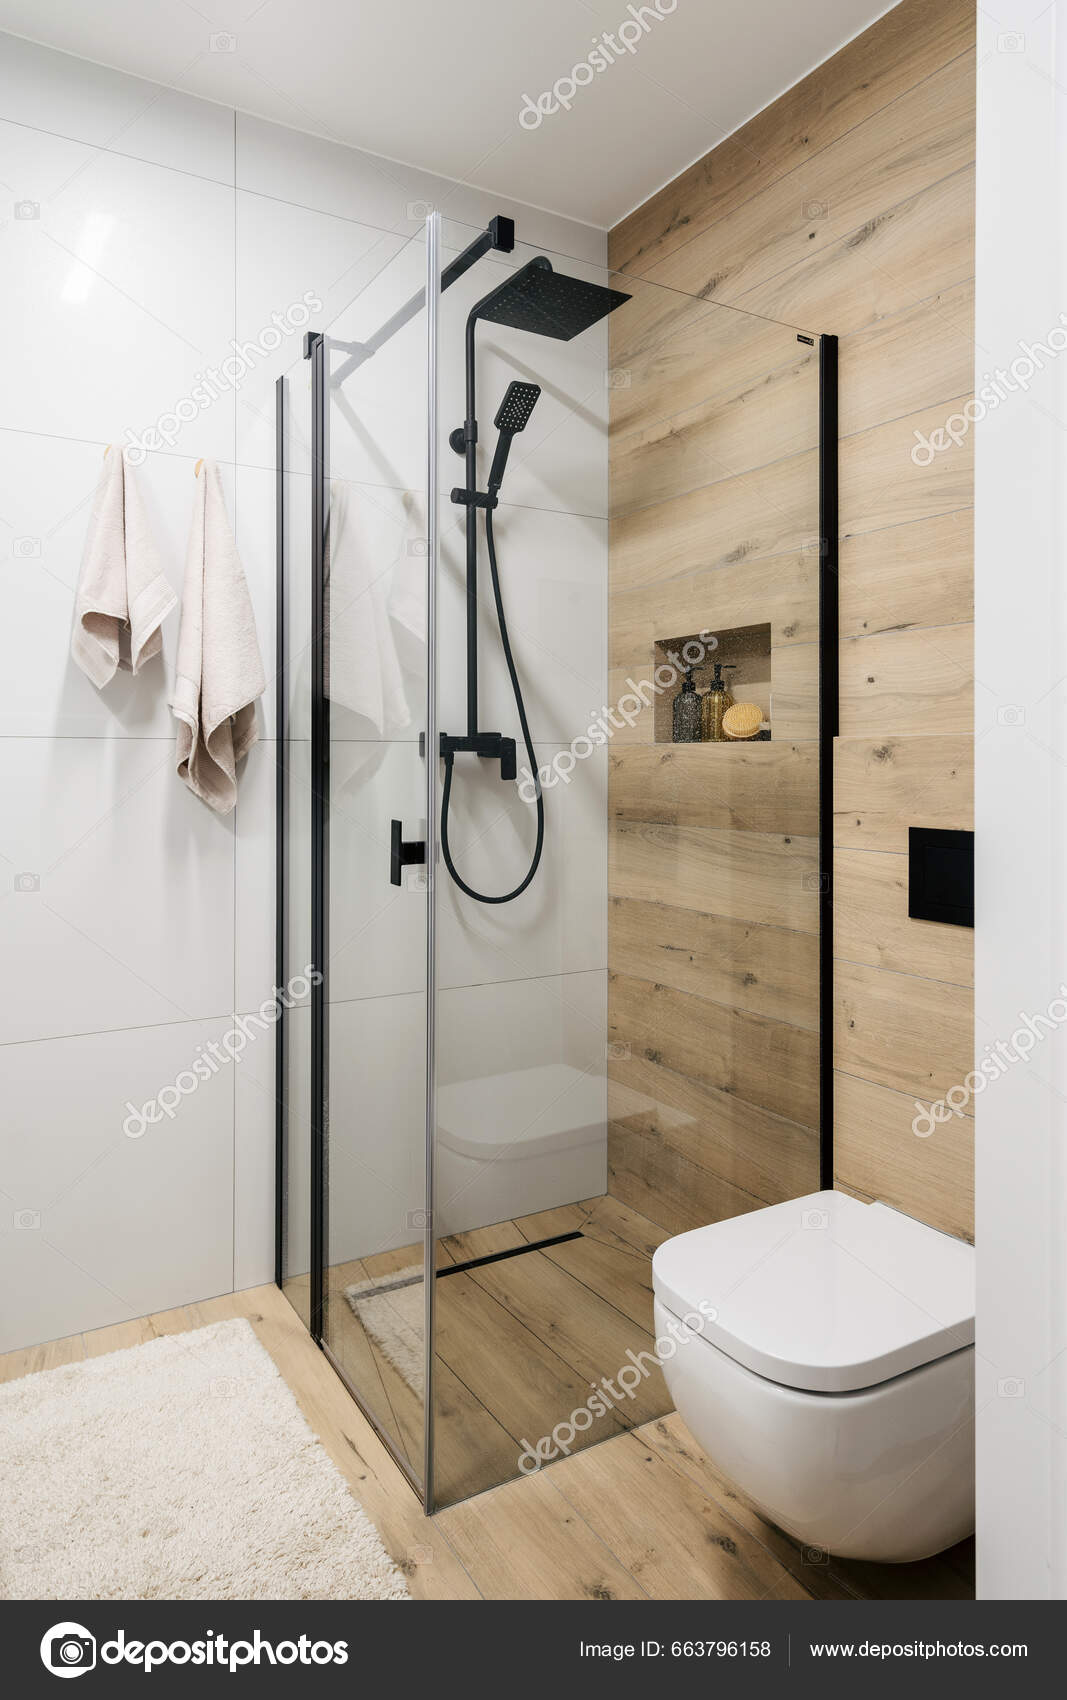 https://st5.depositphotos.com/5339154/66379/i/1600/depositphotos_663796158-stock-photo-bathroom-modern-interior-glass-shower.jpg